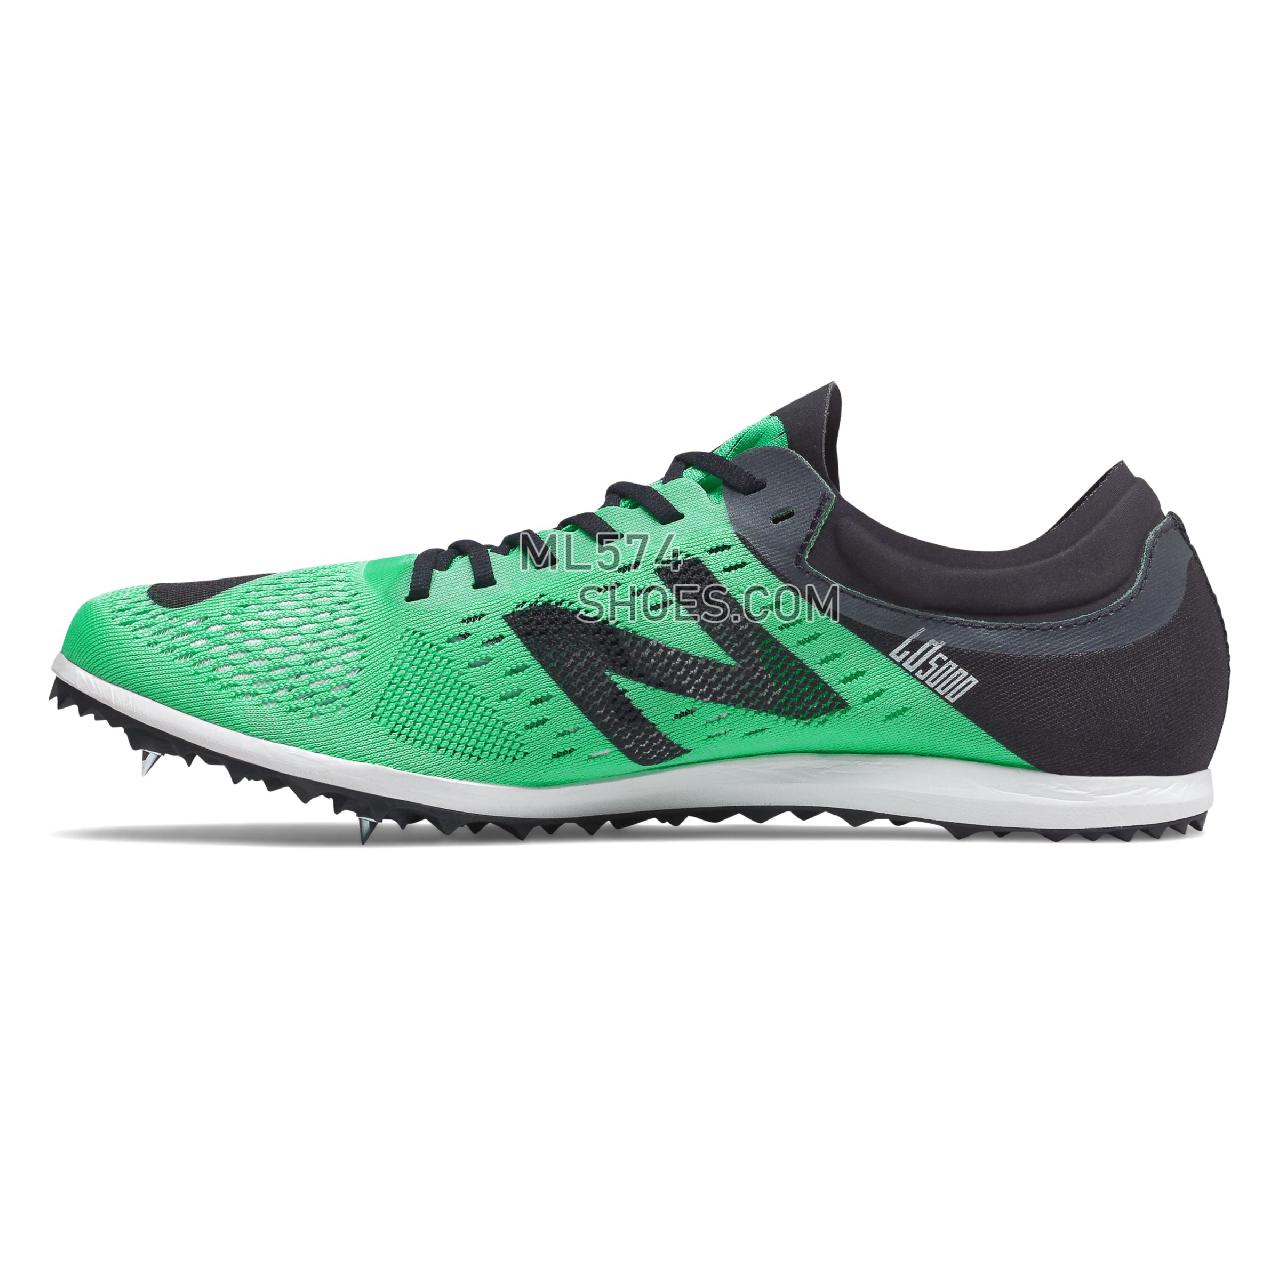 New Balance LD5000v6 Spike - Men's LD5000v6 Spike Running - Neon Emerald with Black - MLD5KGB6